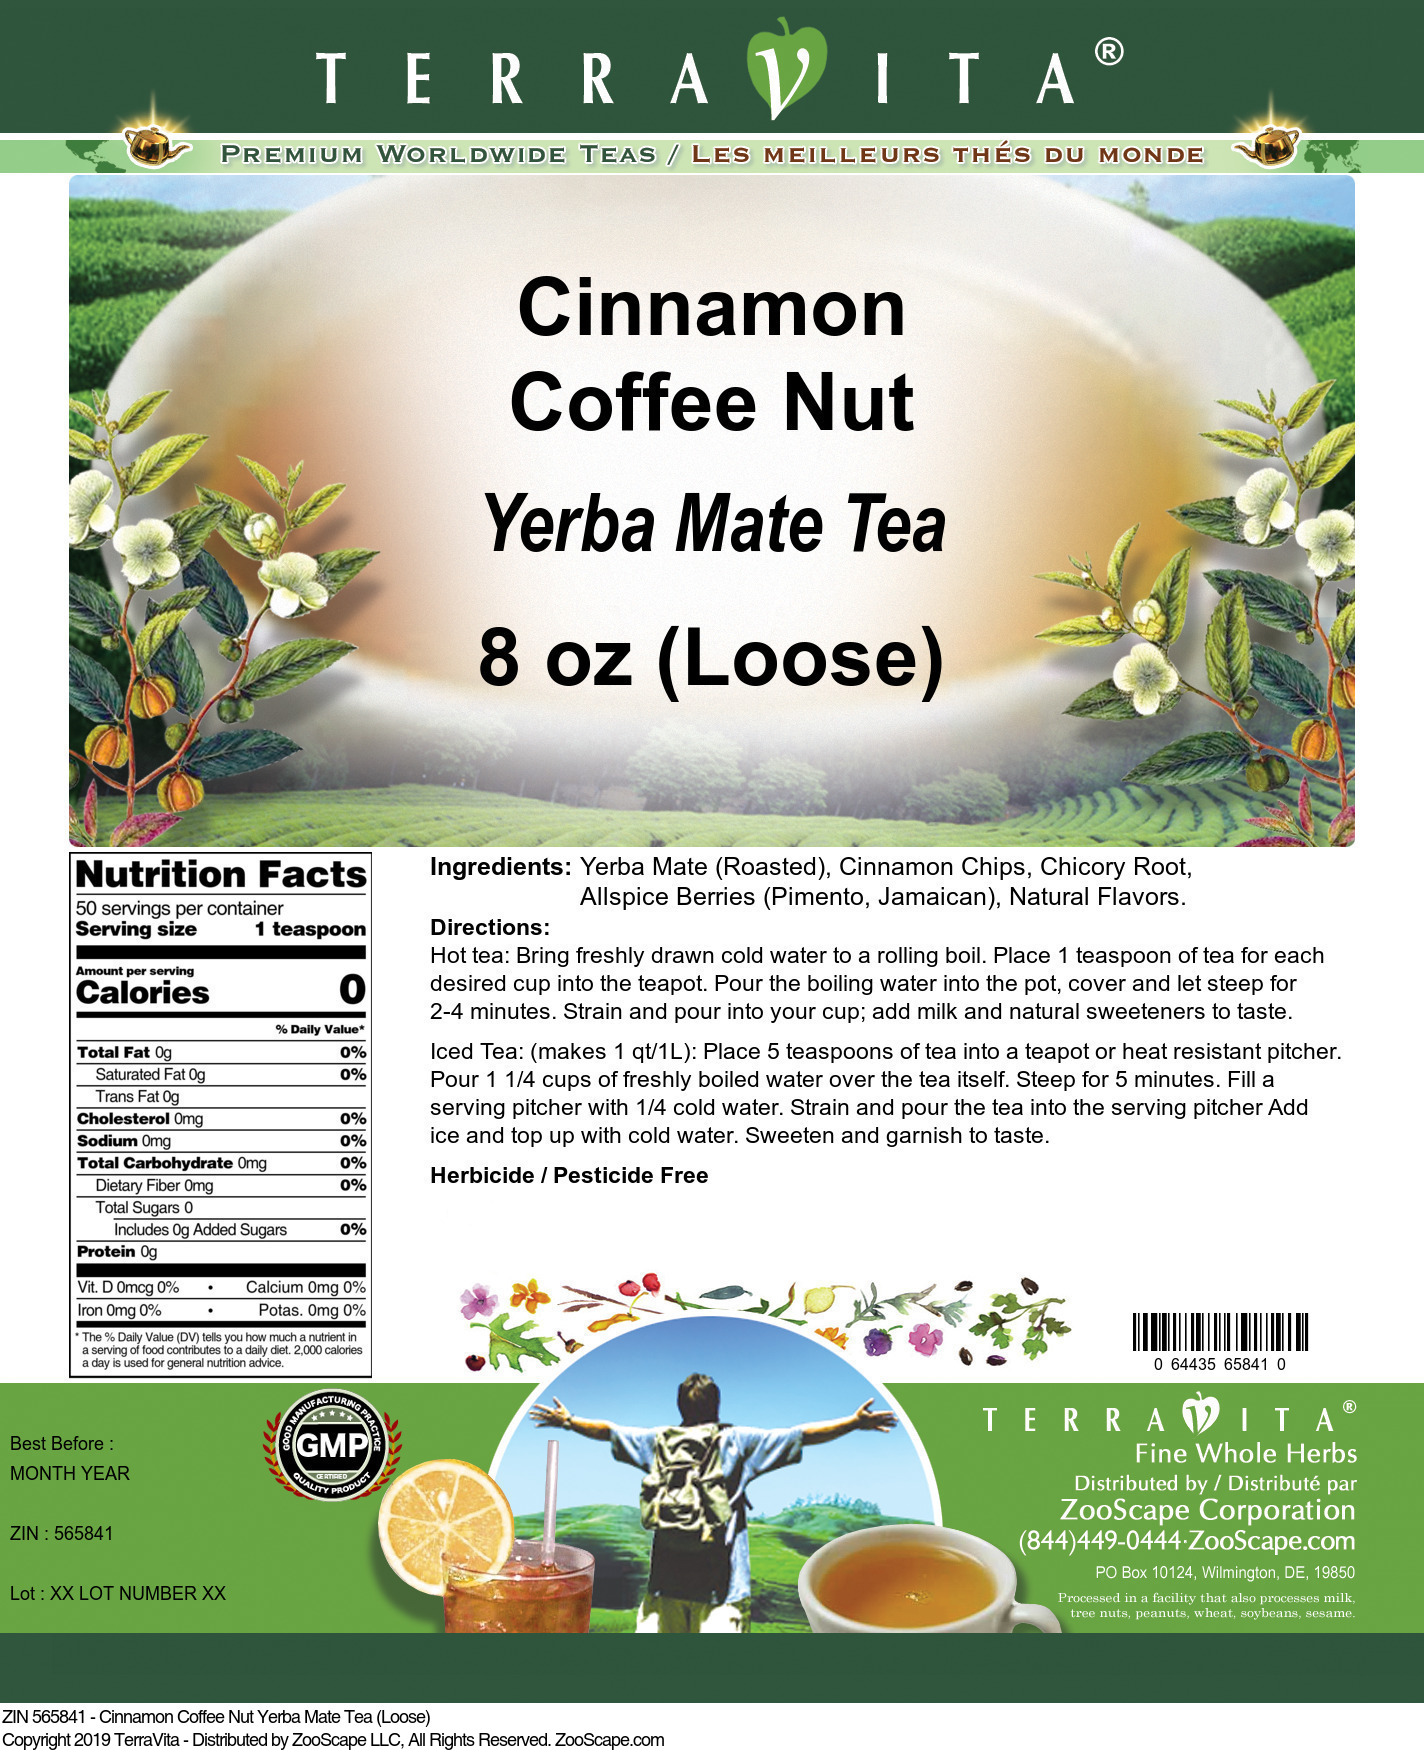 Cinnamon Coffee Nut Yerba Mate Tea (Loose) - Label